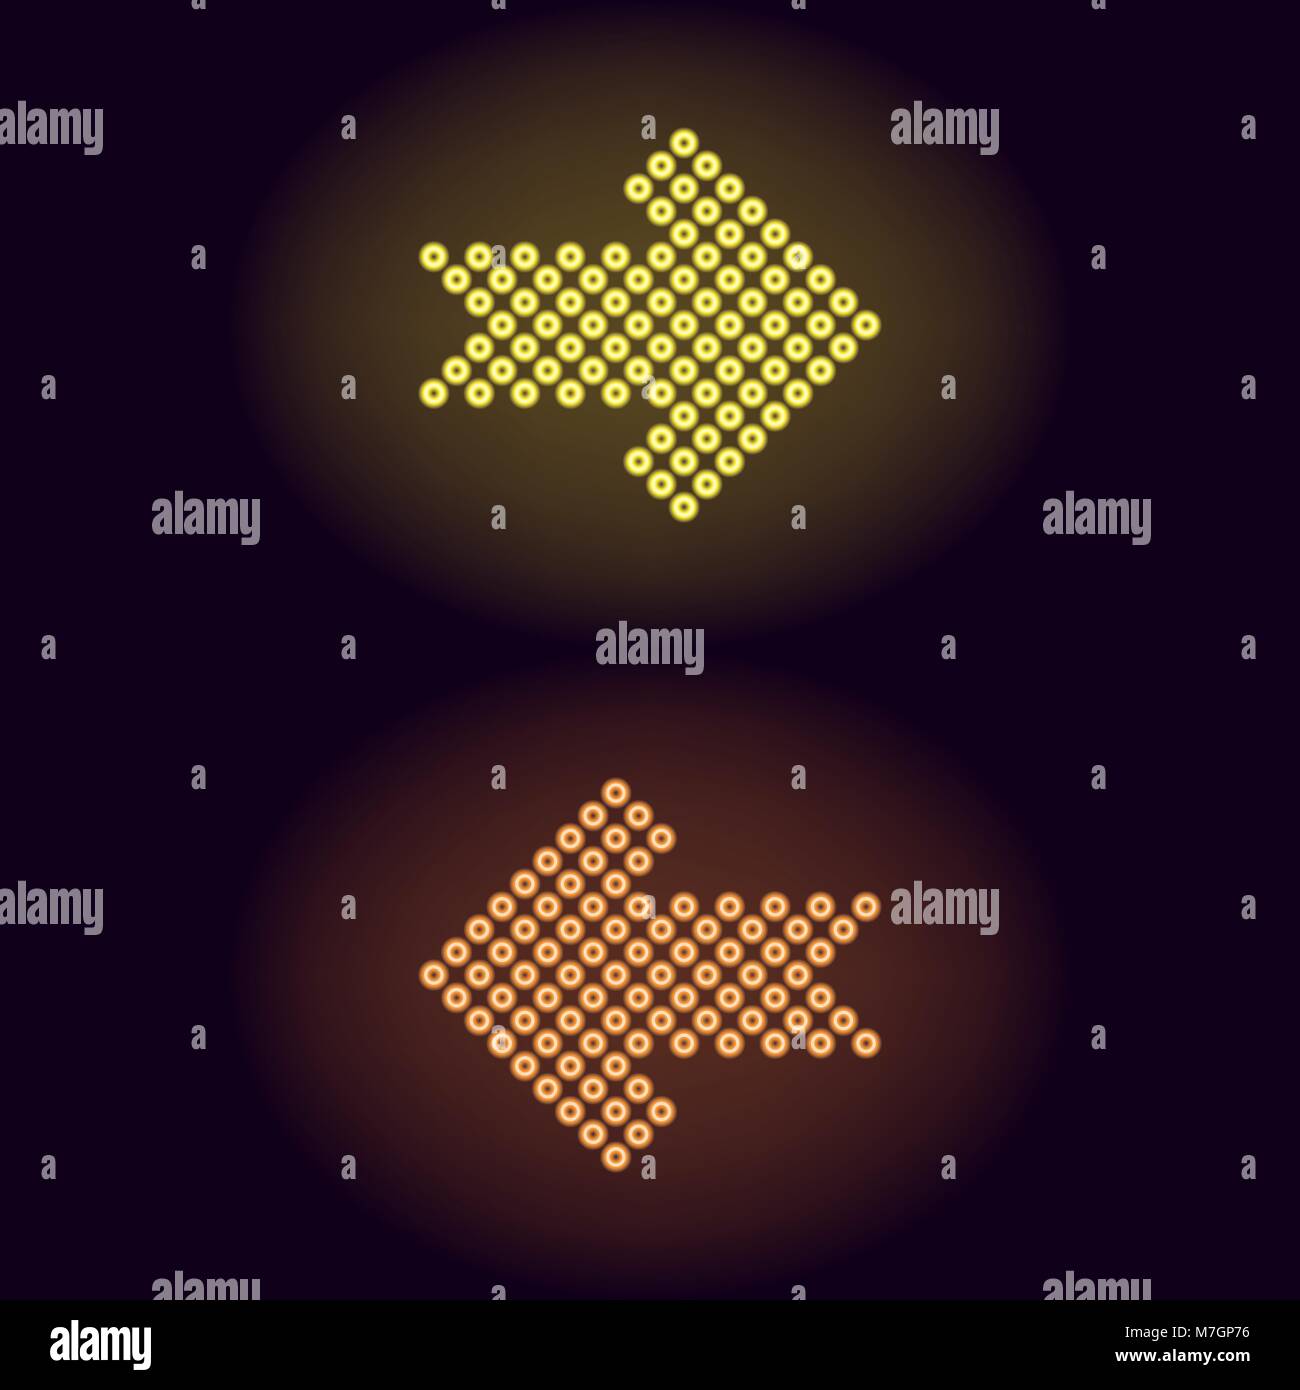 Flecha de neón amarillo y naranja con anillos. Ilustración vectorial de flecha de neón corta compuesta de muchos anillos con retroiluminación del fondo oscuro Ilustración del Vector